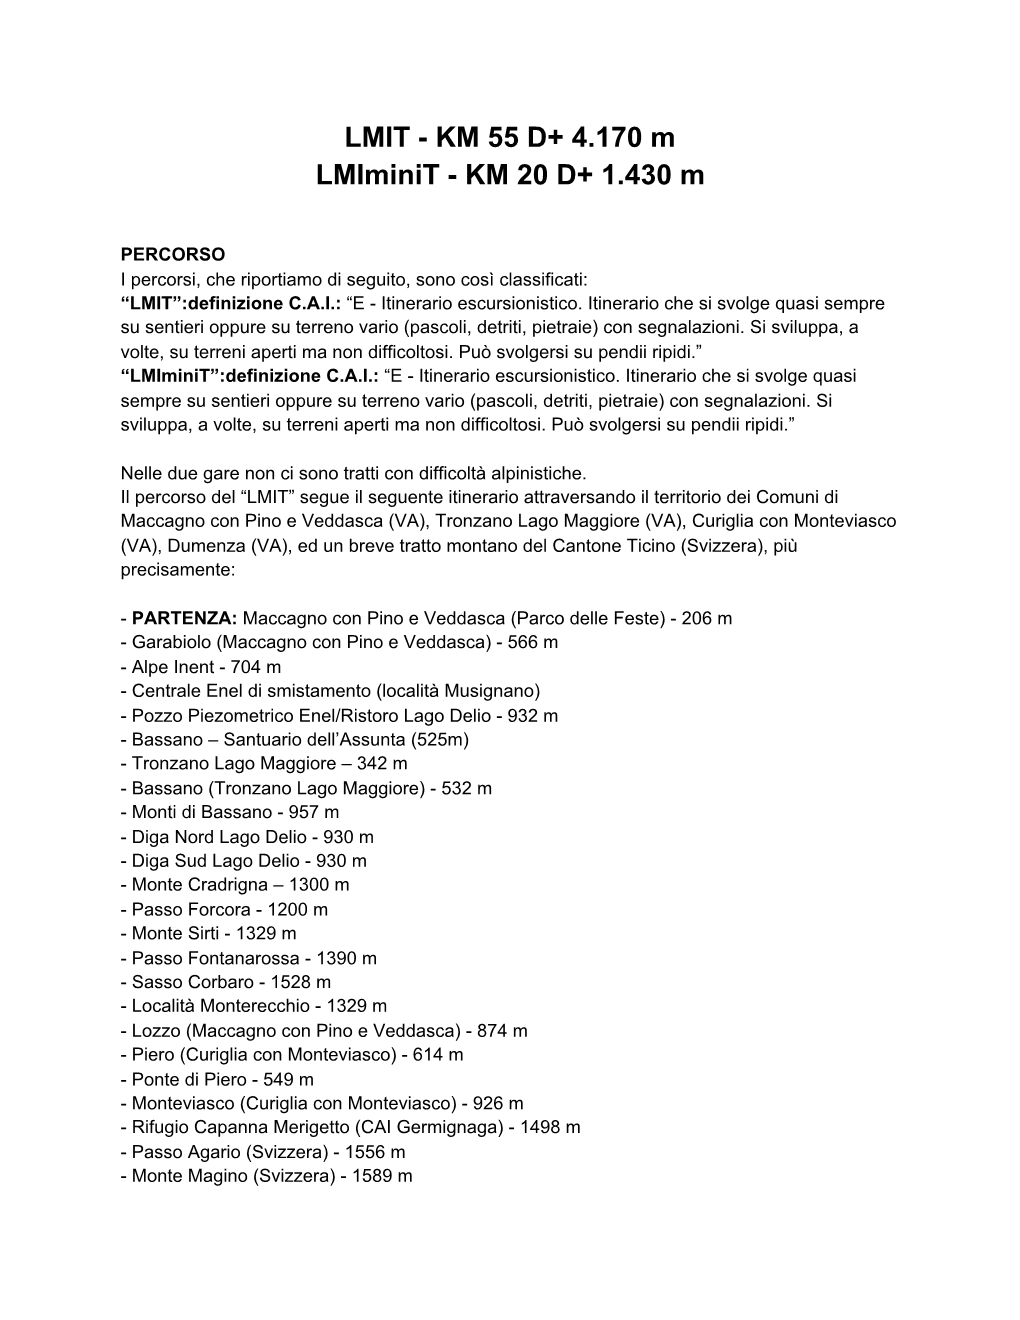 LMIT - KM 55 D+ 4.170 M Lmiminit - KM 20 D+ 1.430 M